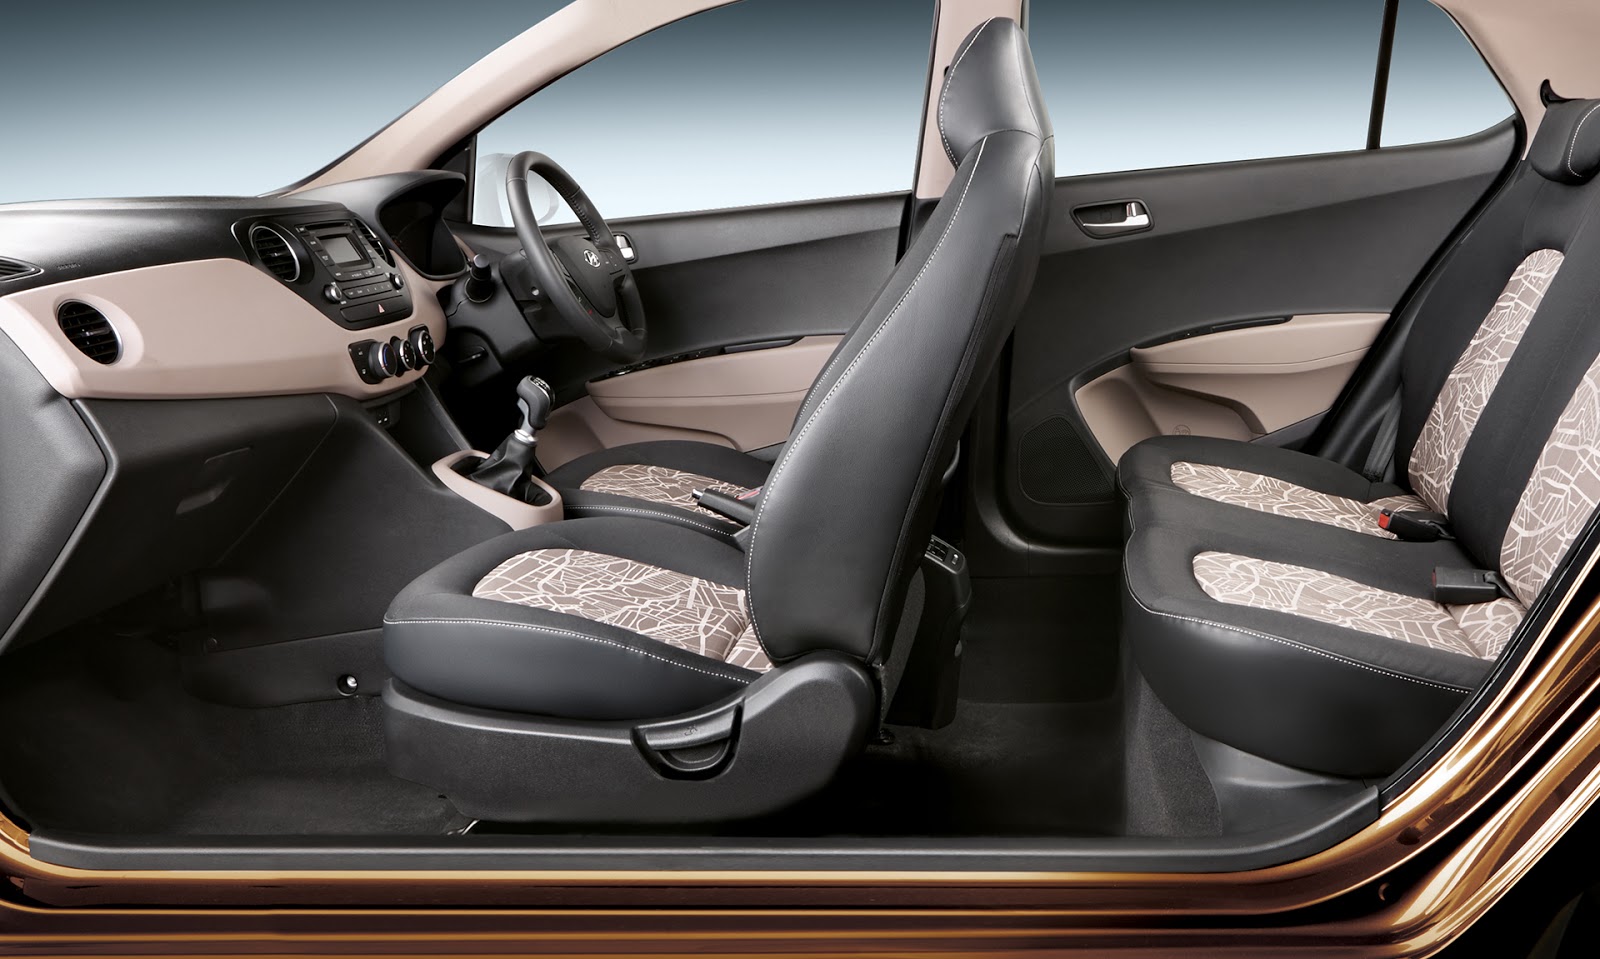 Vehicleeverything Hyundai I10 Grand Interior